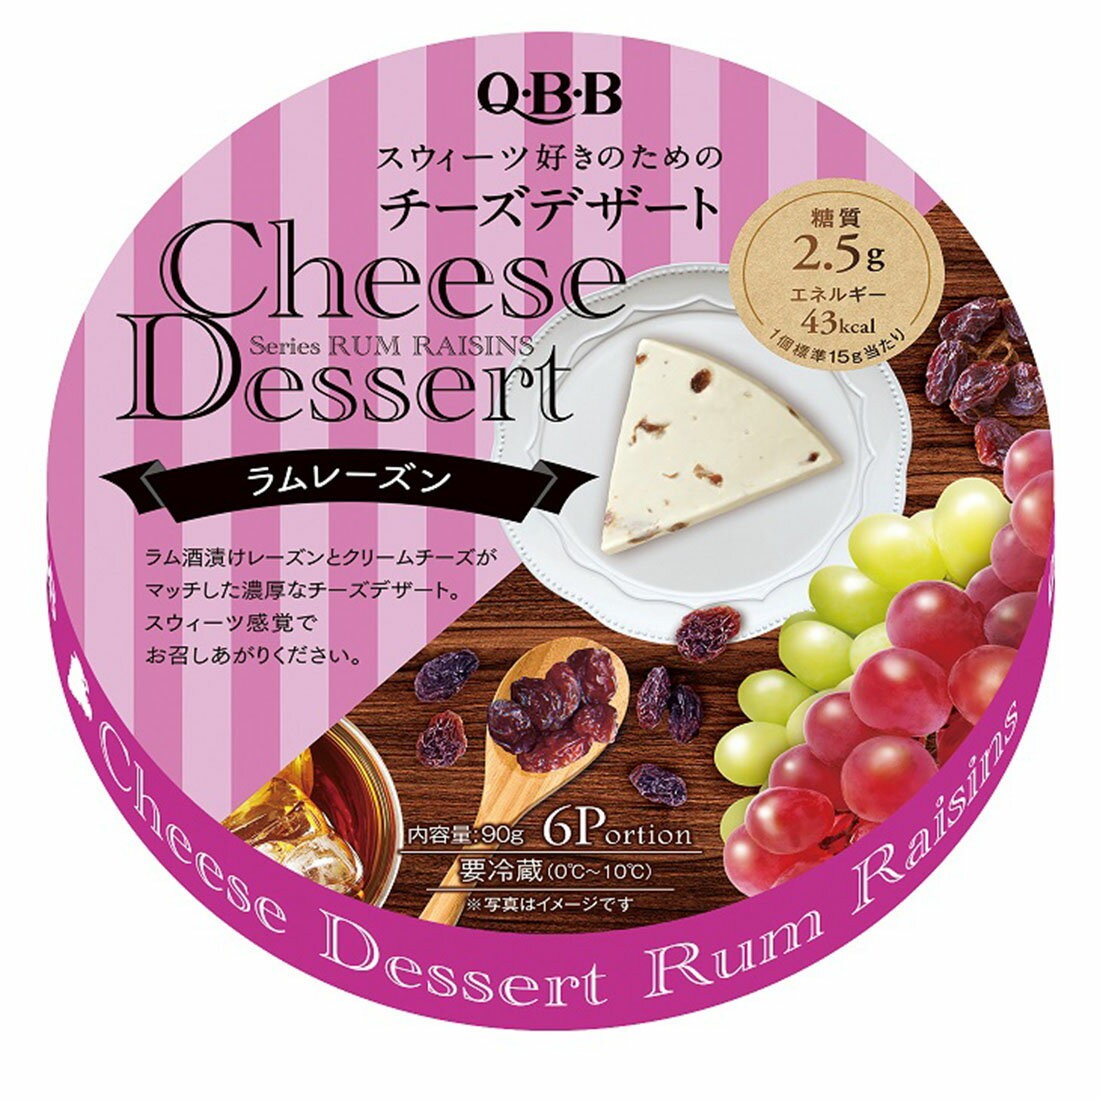 qbb-cheese-dessert-rum-raisins-flavor